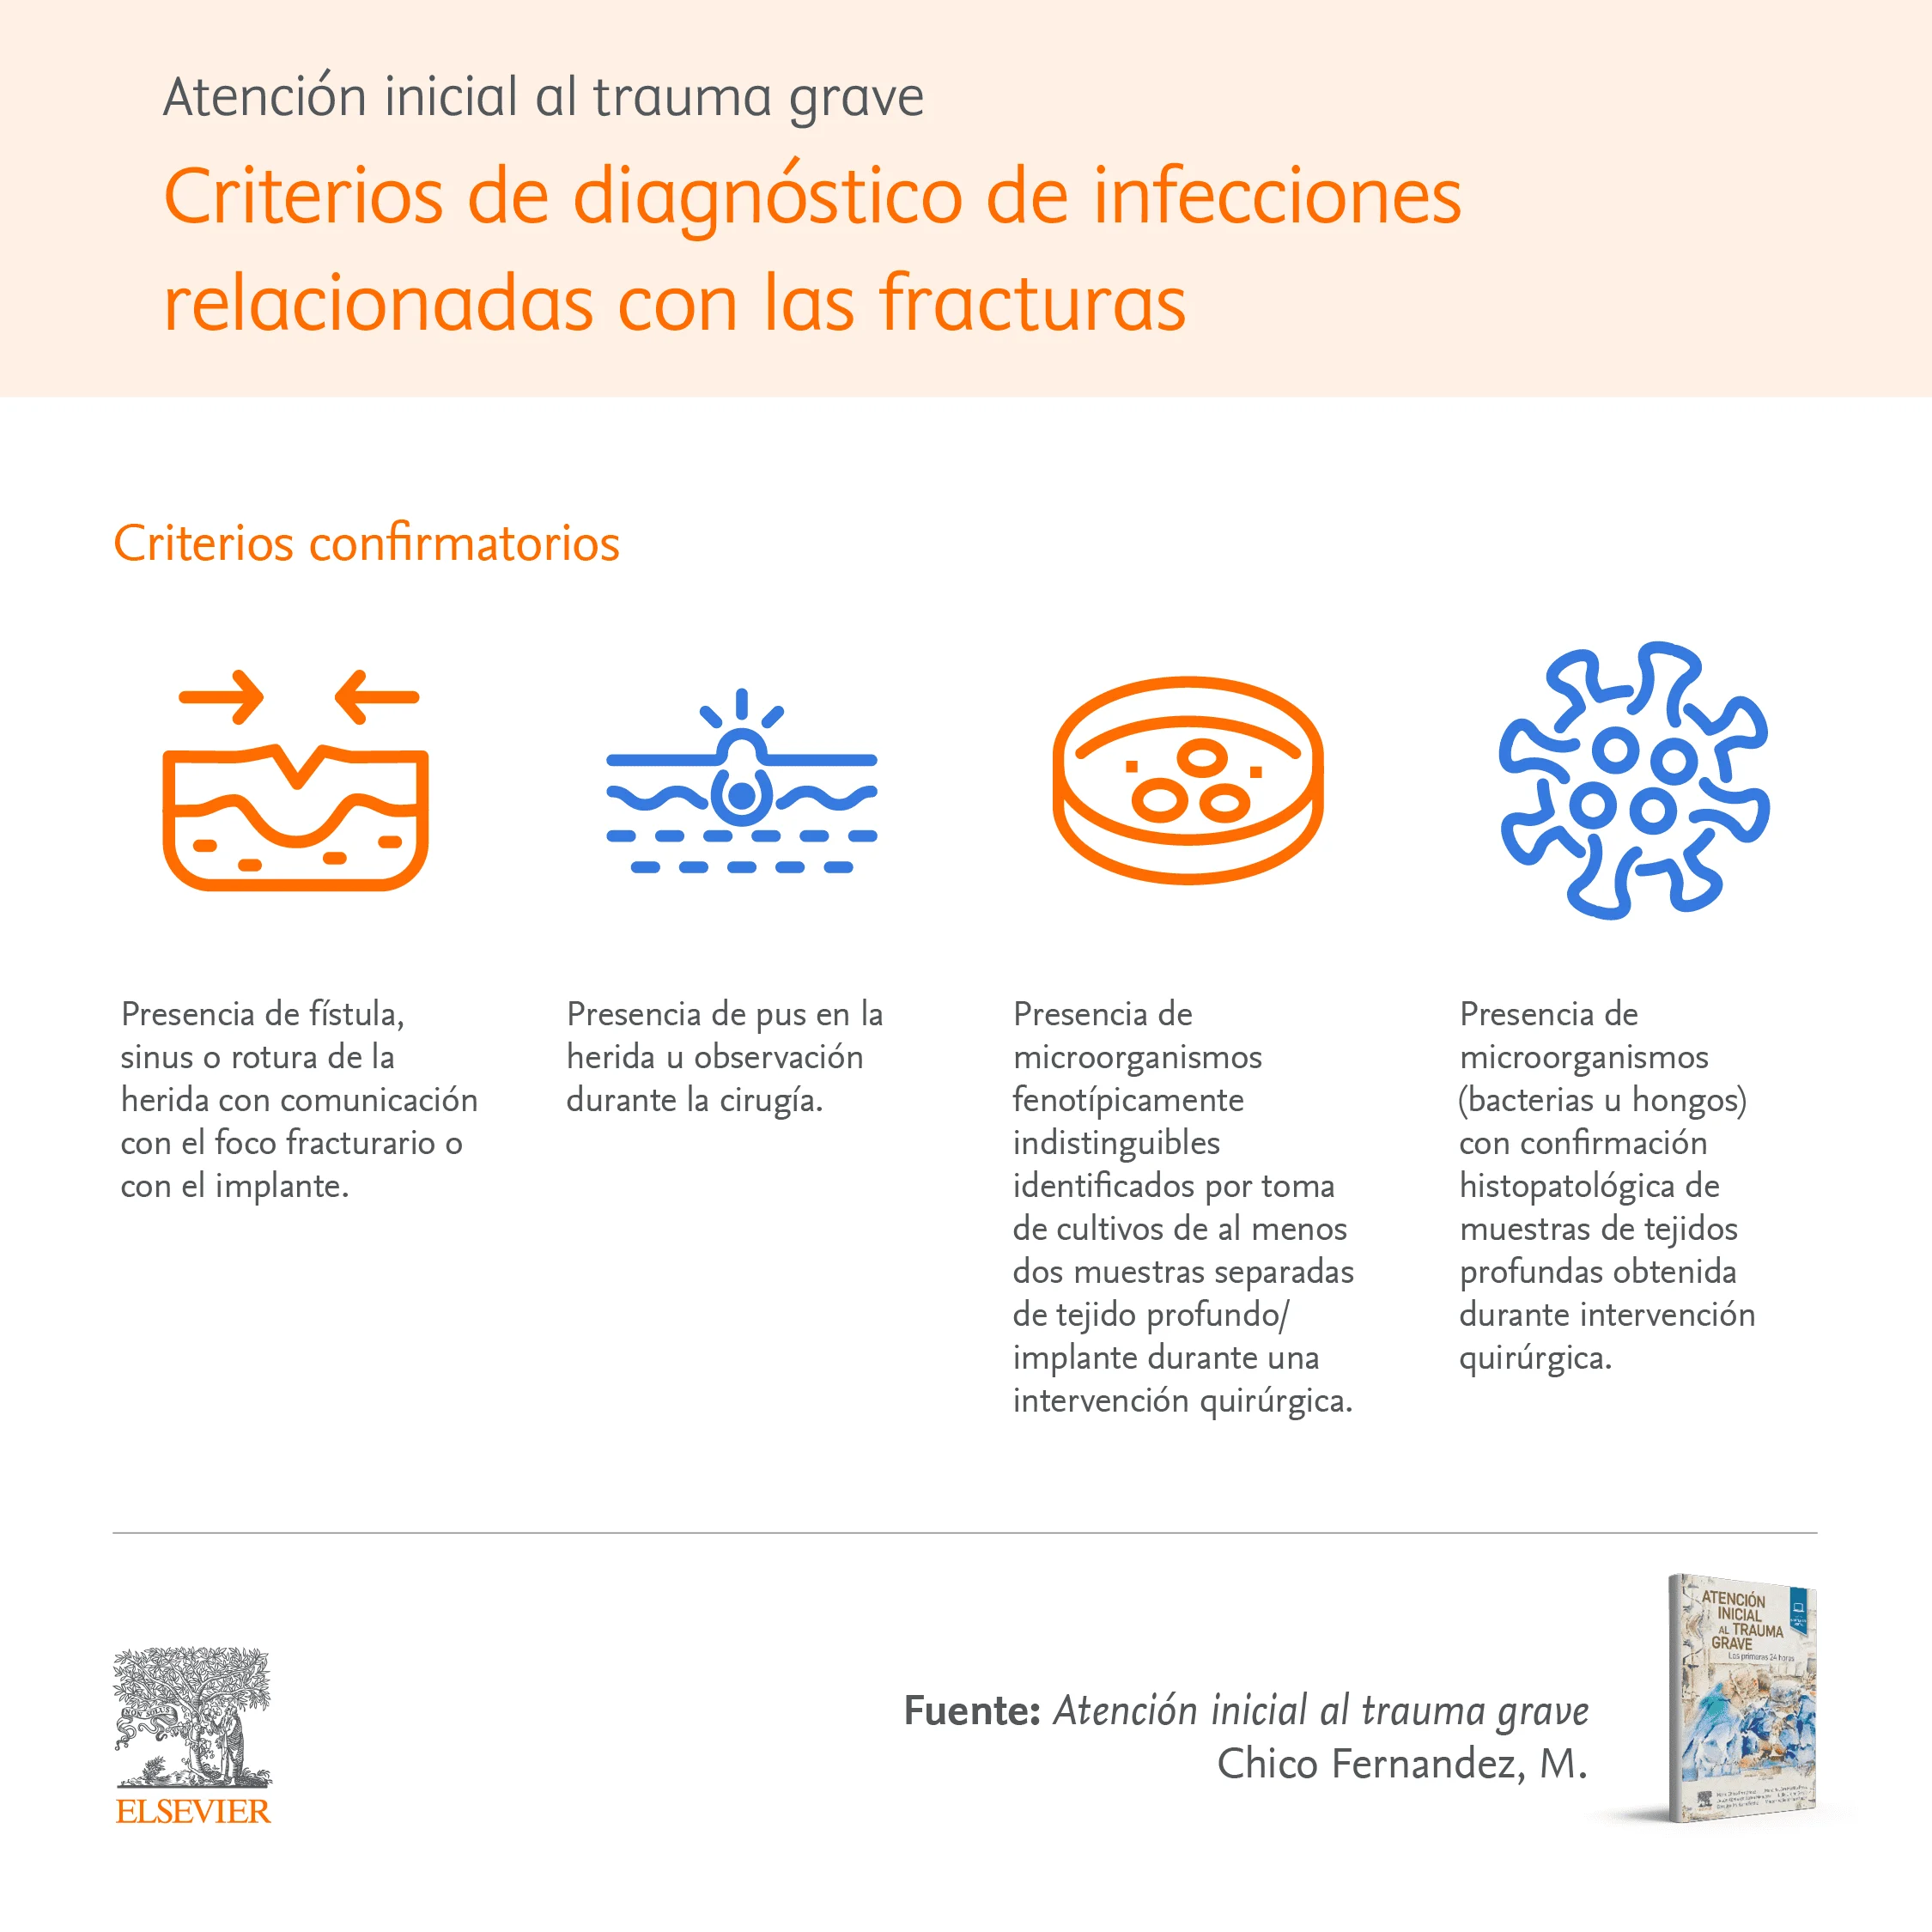 Infographic: Criterios de diagnósticos de infecciones relacionadas con las fracturas